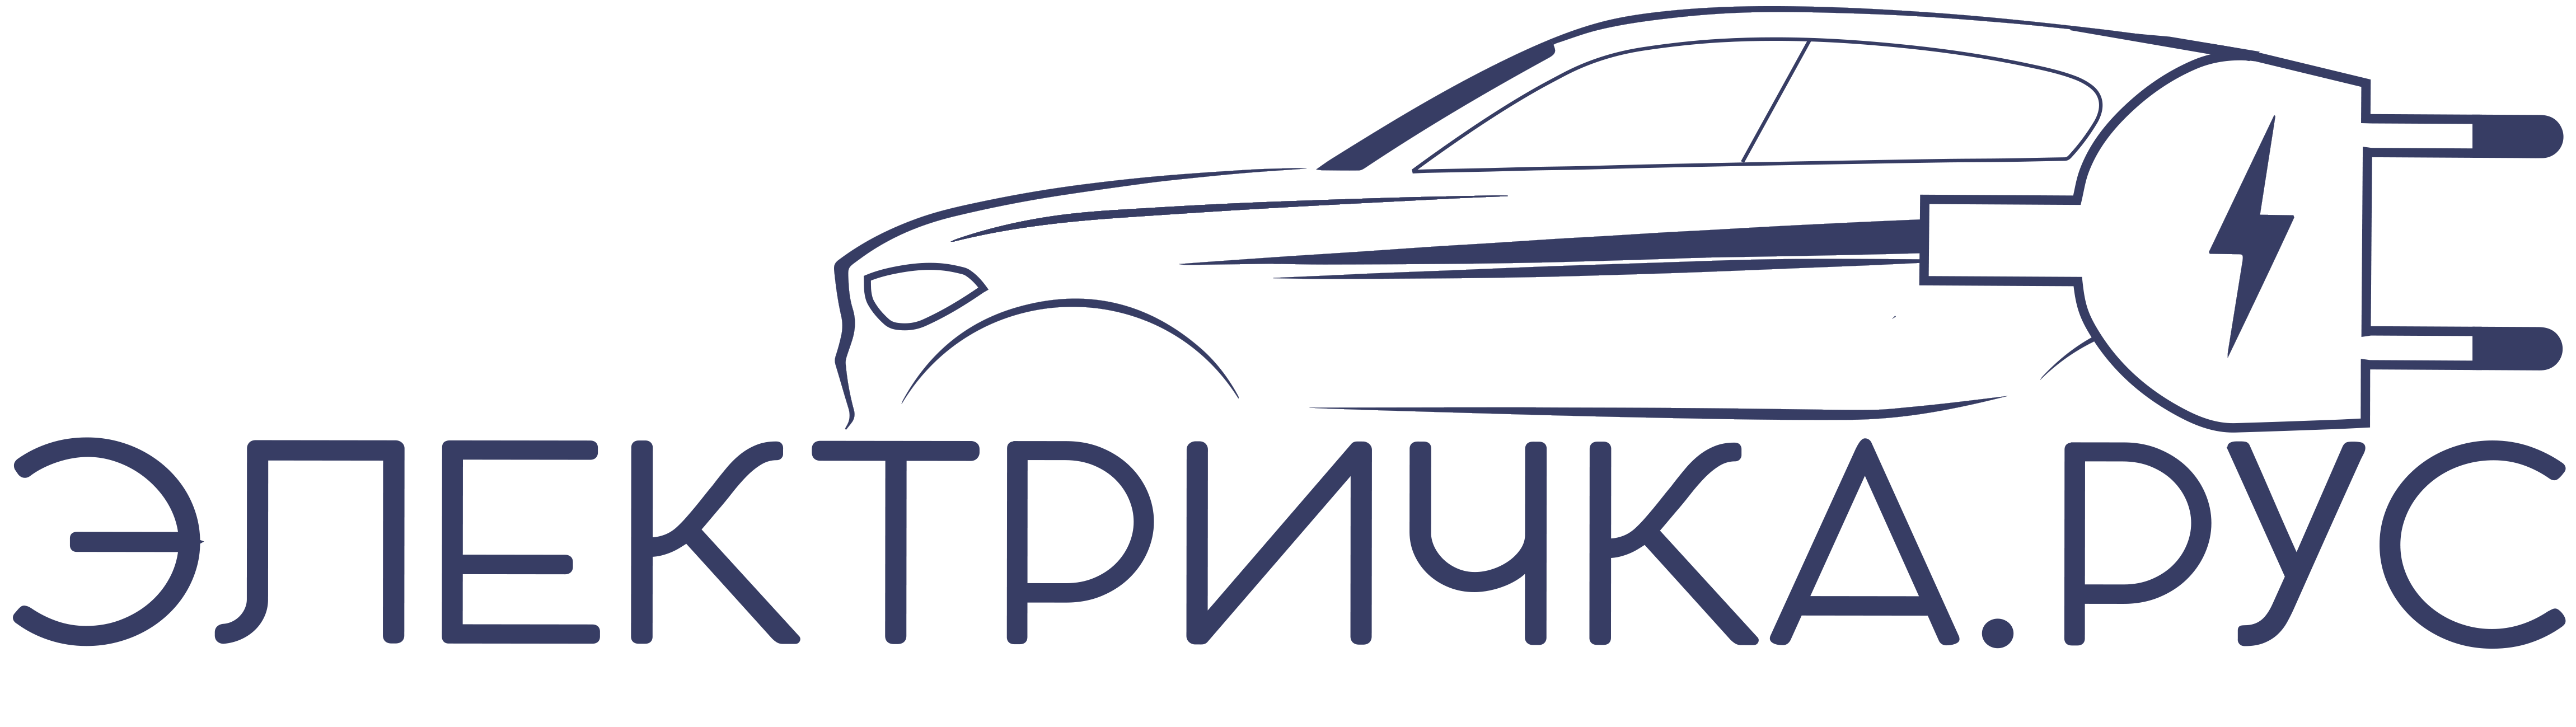 ЭЛЕКТРИЧКА.РУС - Город Москва logo.png